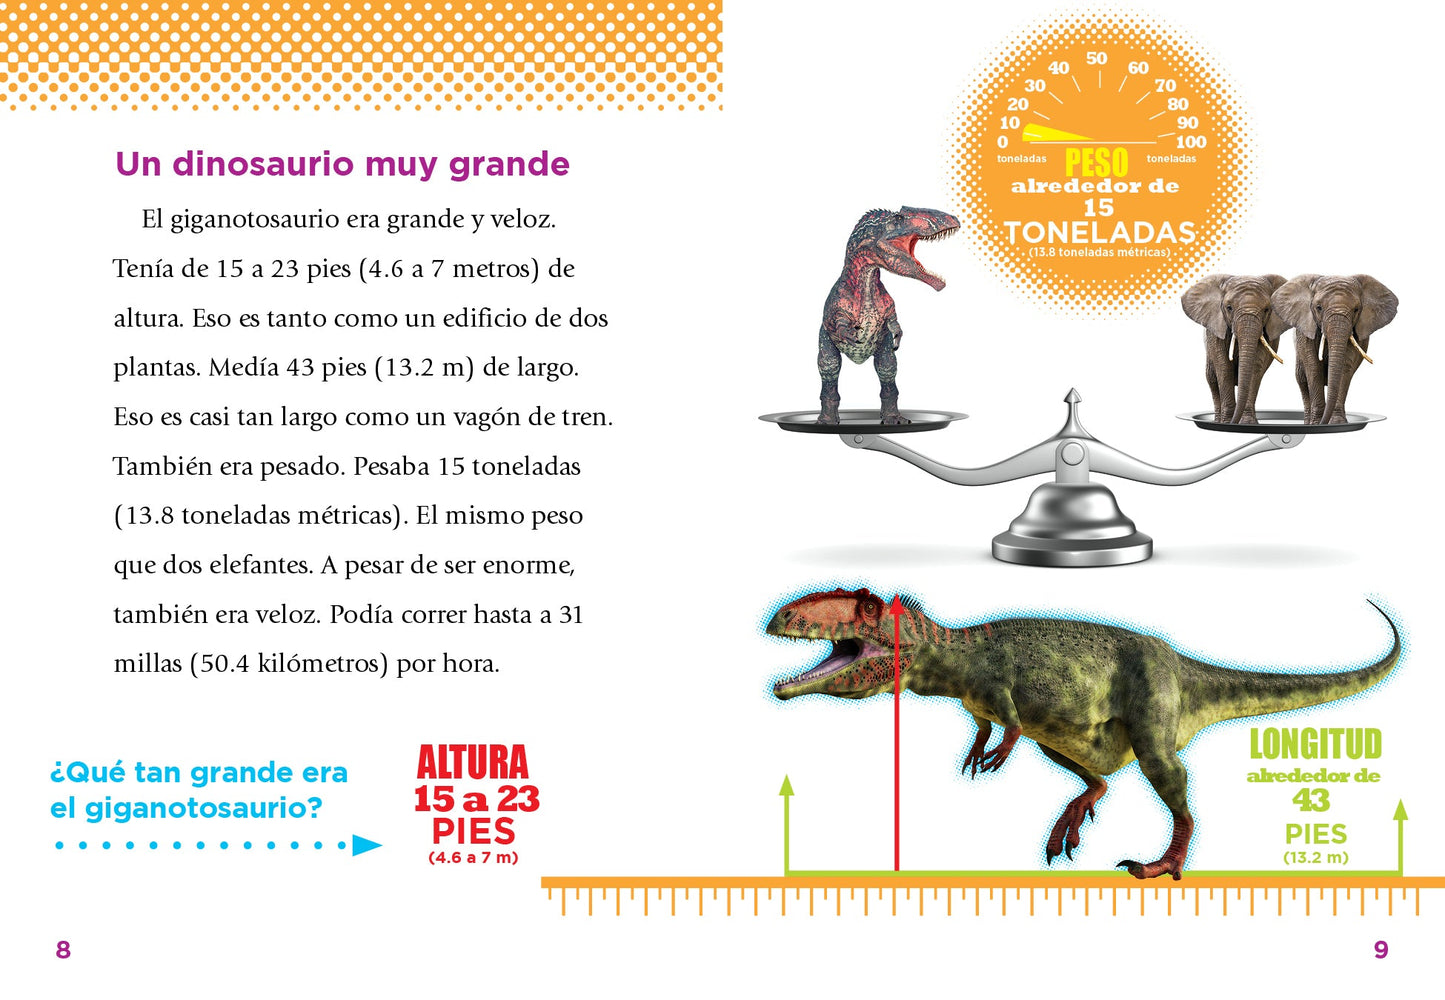 Descubrimiento de dinosaurios: El giganotosaurio